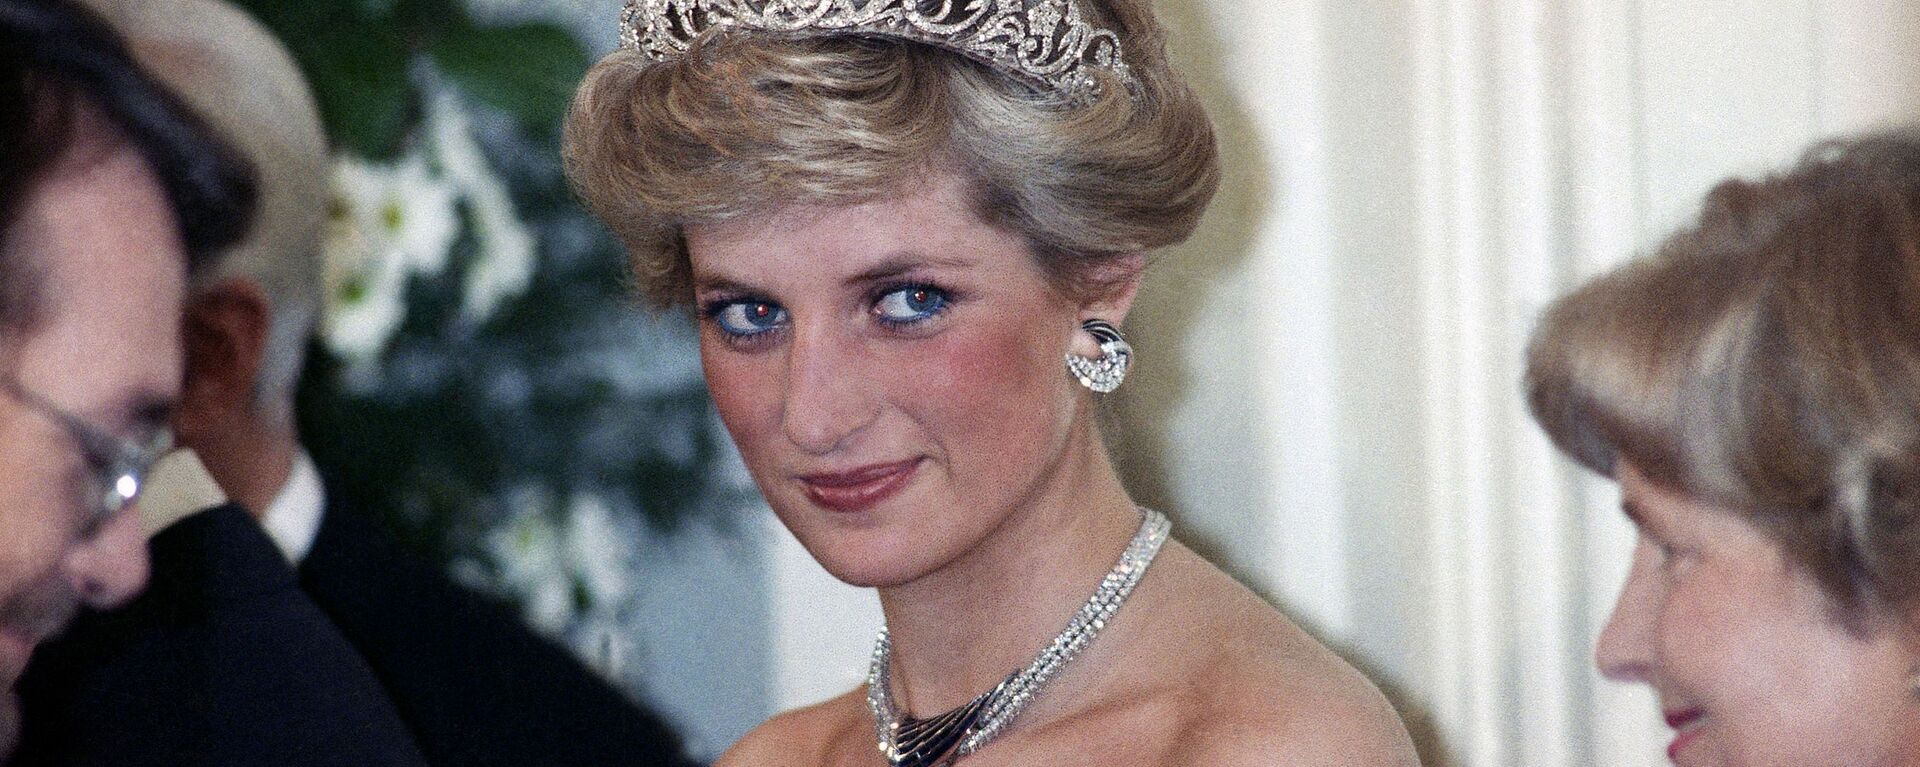 Принцесса Диана на вечернем приеме в честь членов королевской семьи в Бонне,  Германия, 1987 год - Sputnik Lietuva, 1920, 01.07.2021